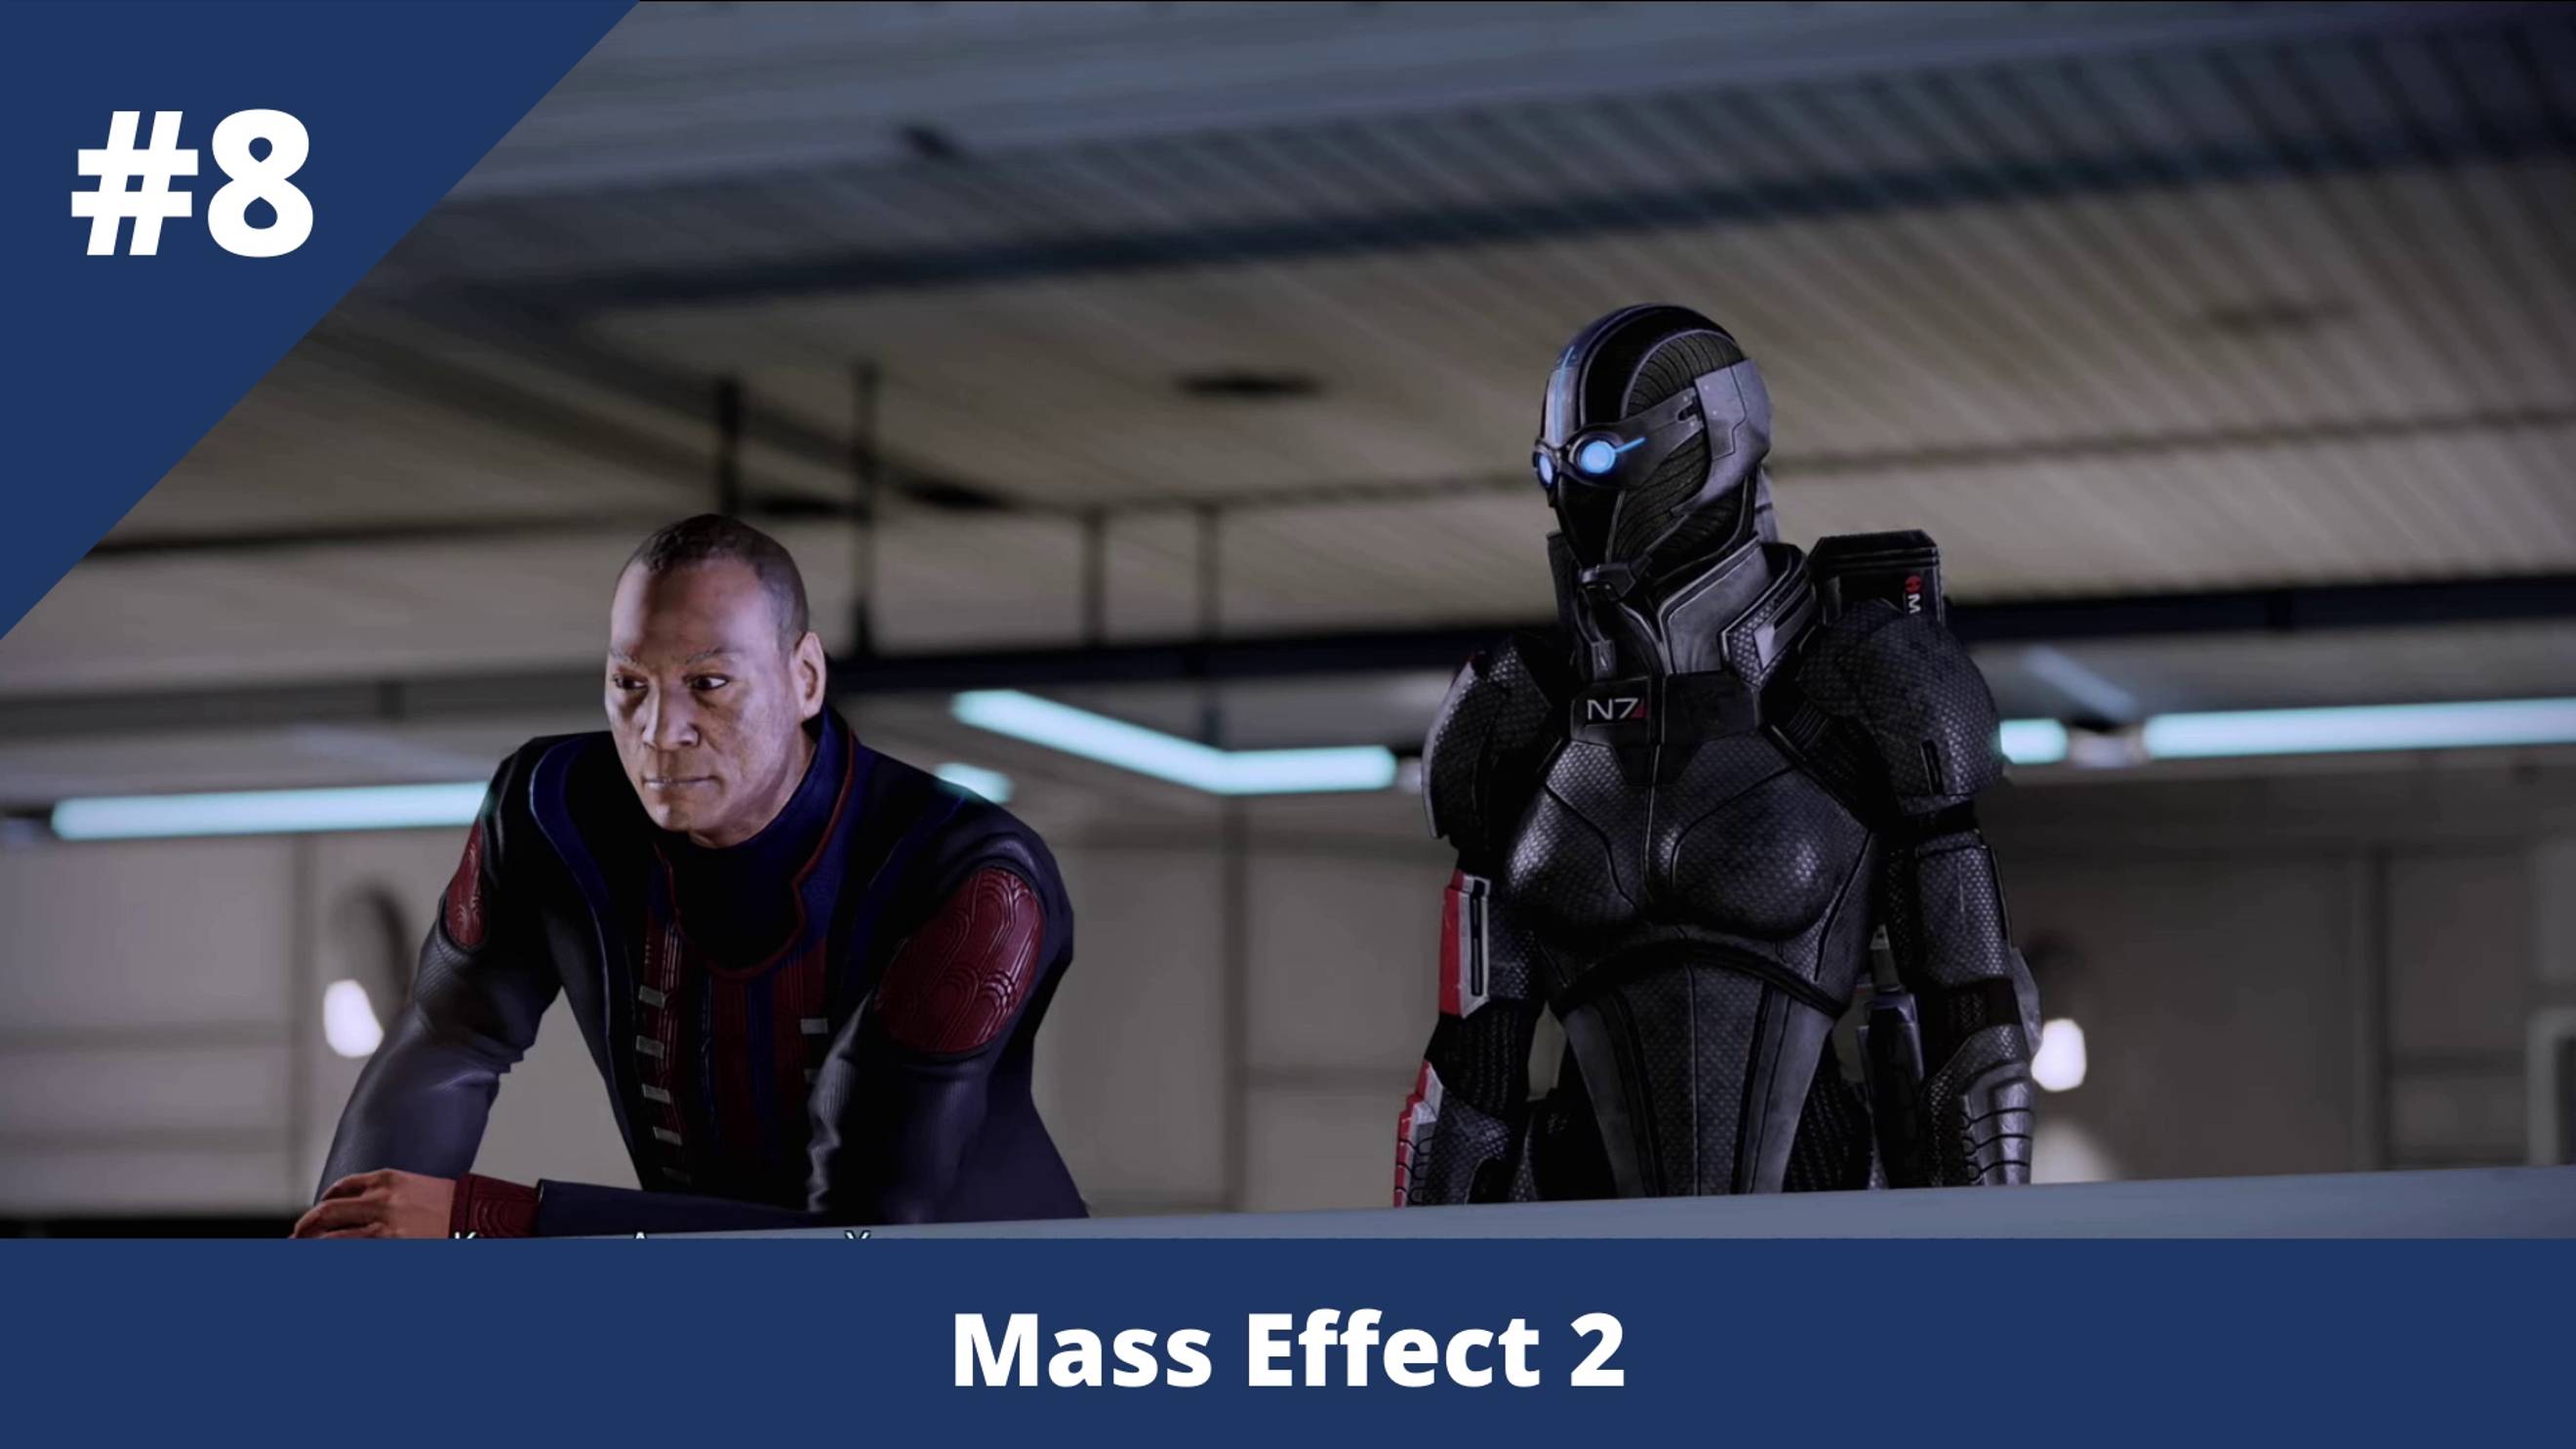 Mass Effect 2 - 8 - Шепард, ты же женщина, ты должна остановить Коллекционеров